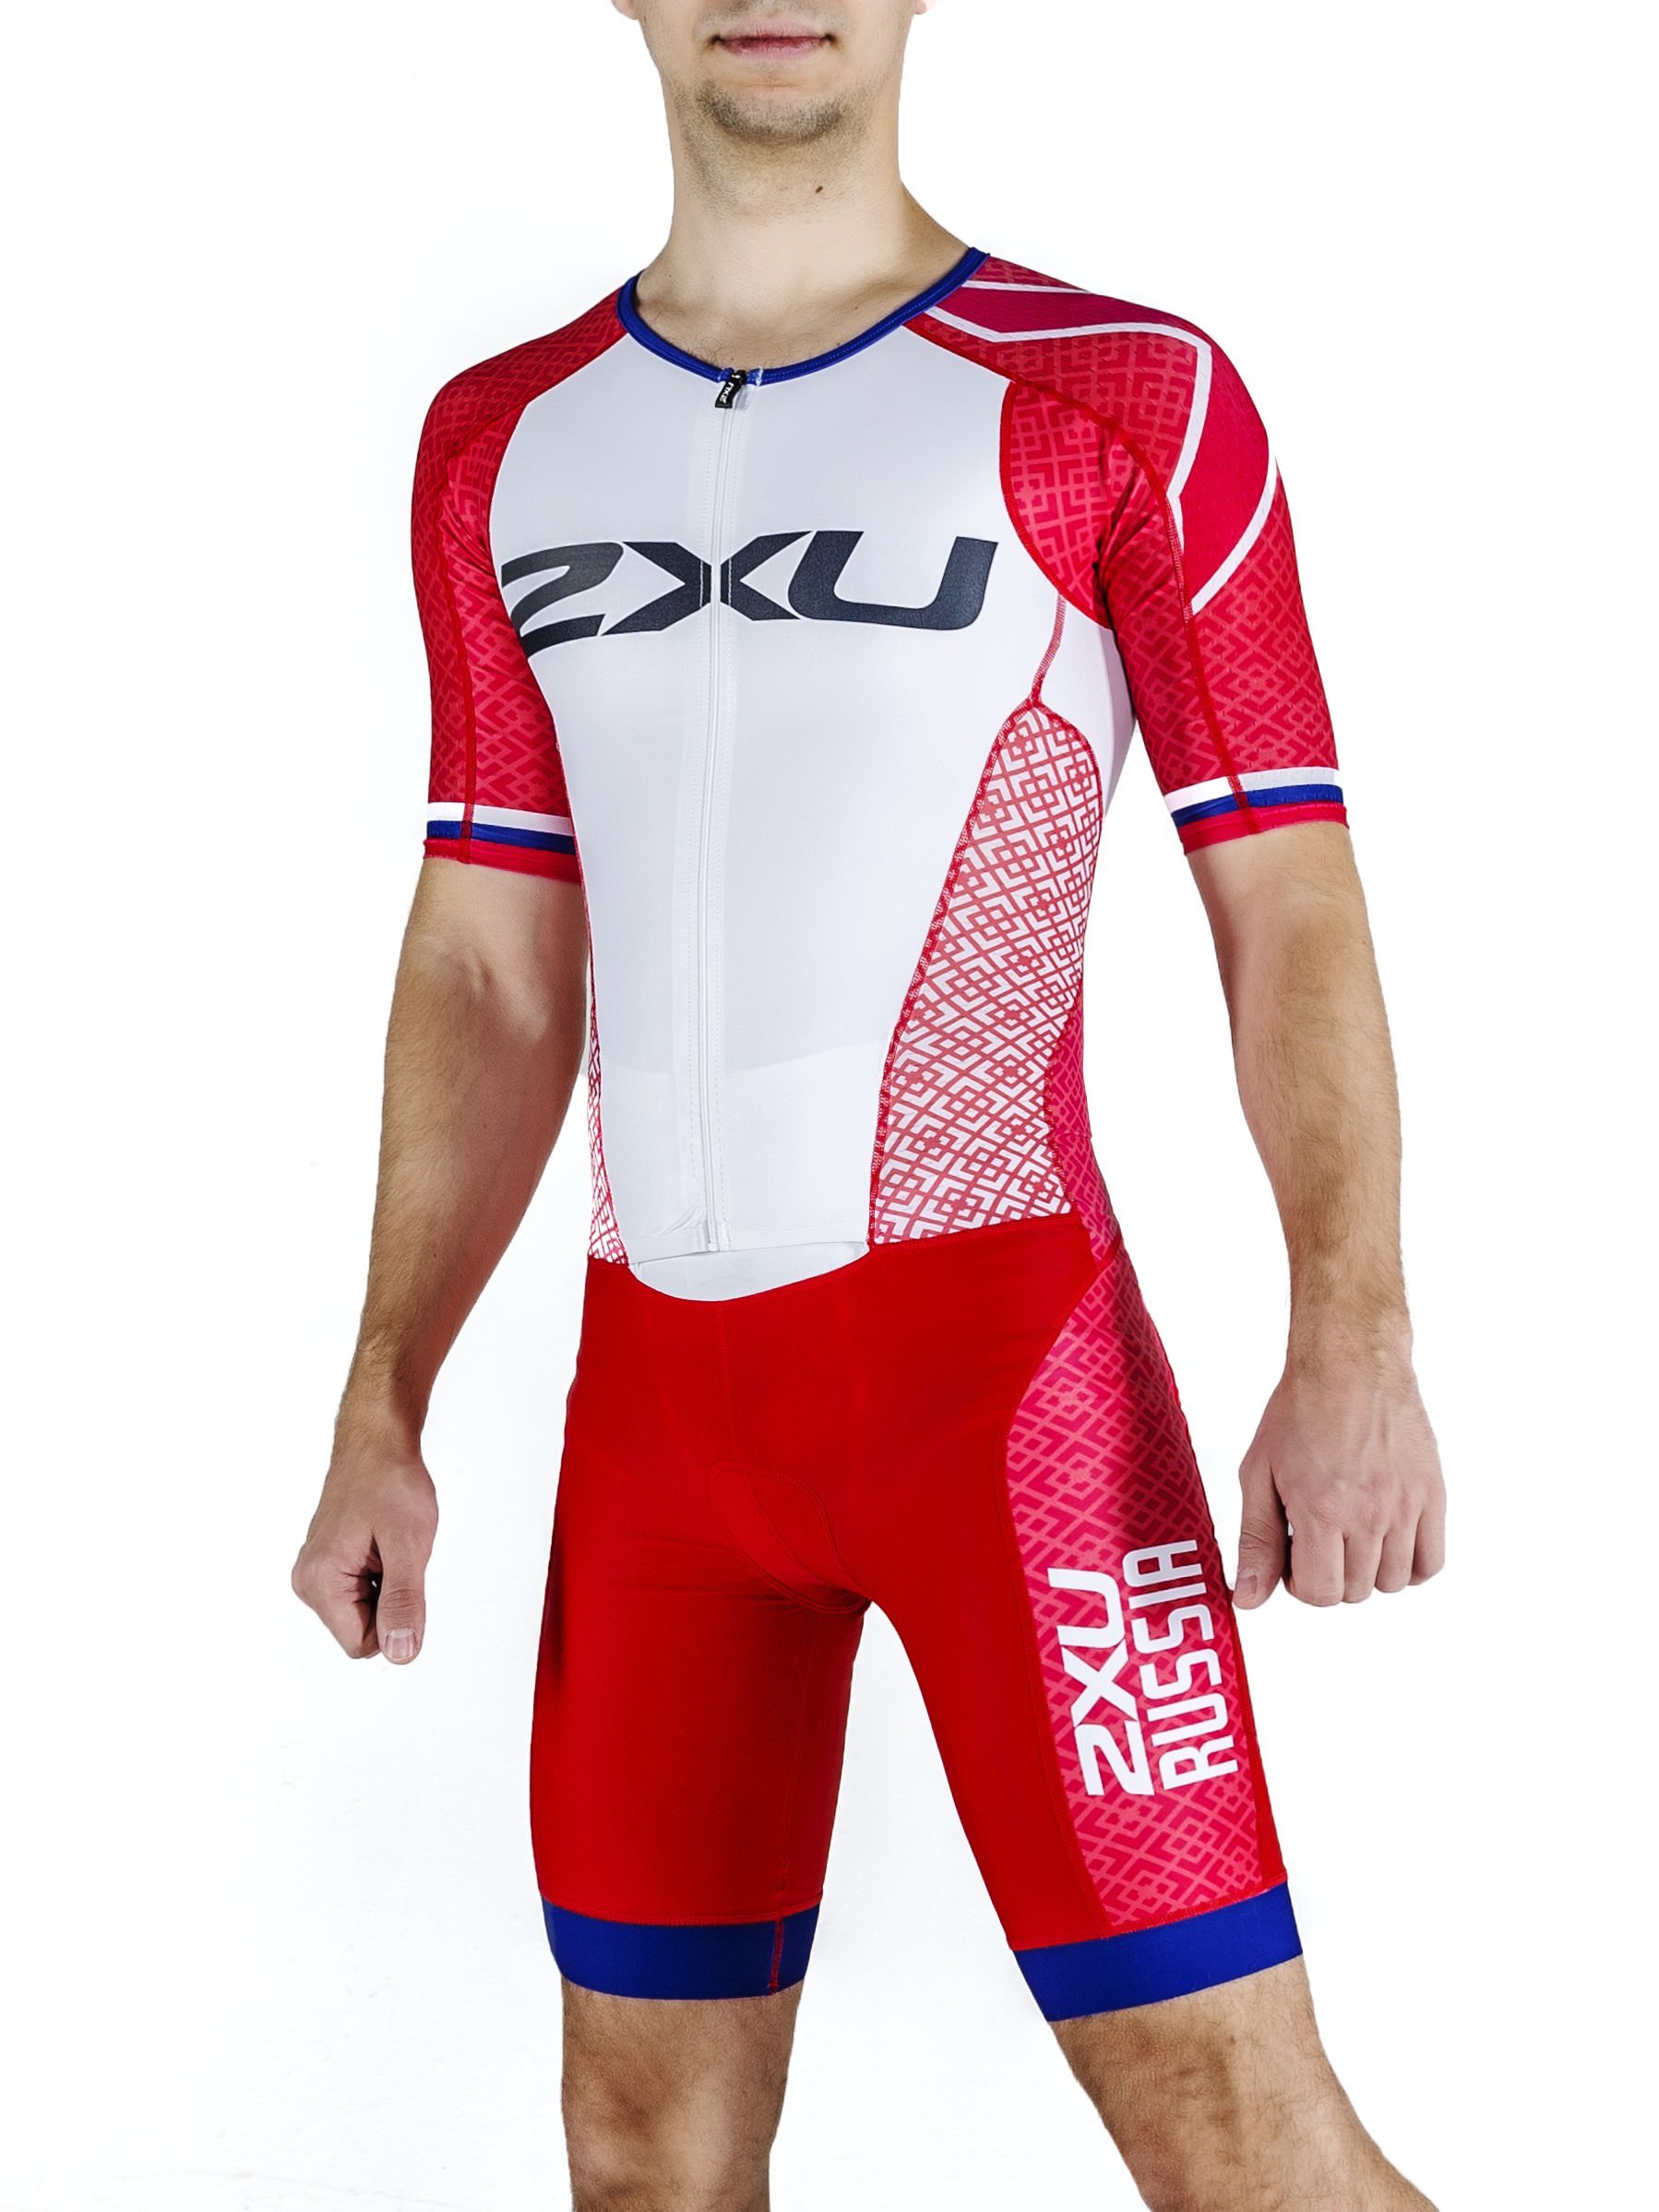 Мужской стартовый костюм 2XU для триатлона с удлинёнными рукавами серия Perform (индивидуальный дизайн)